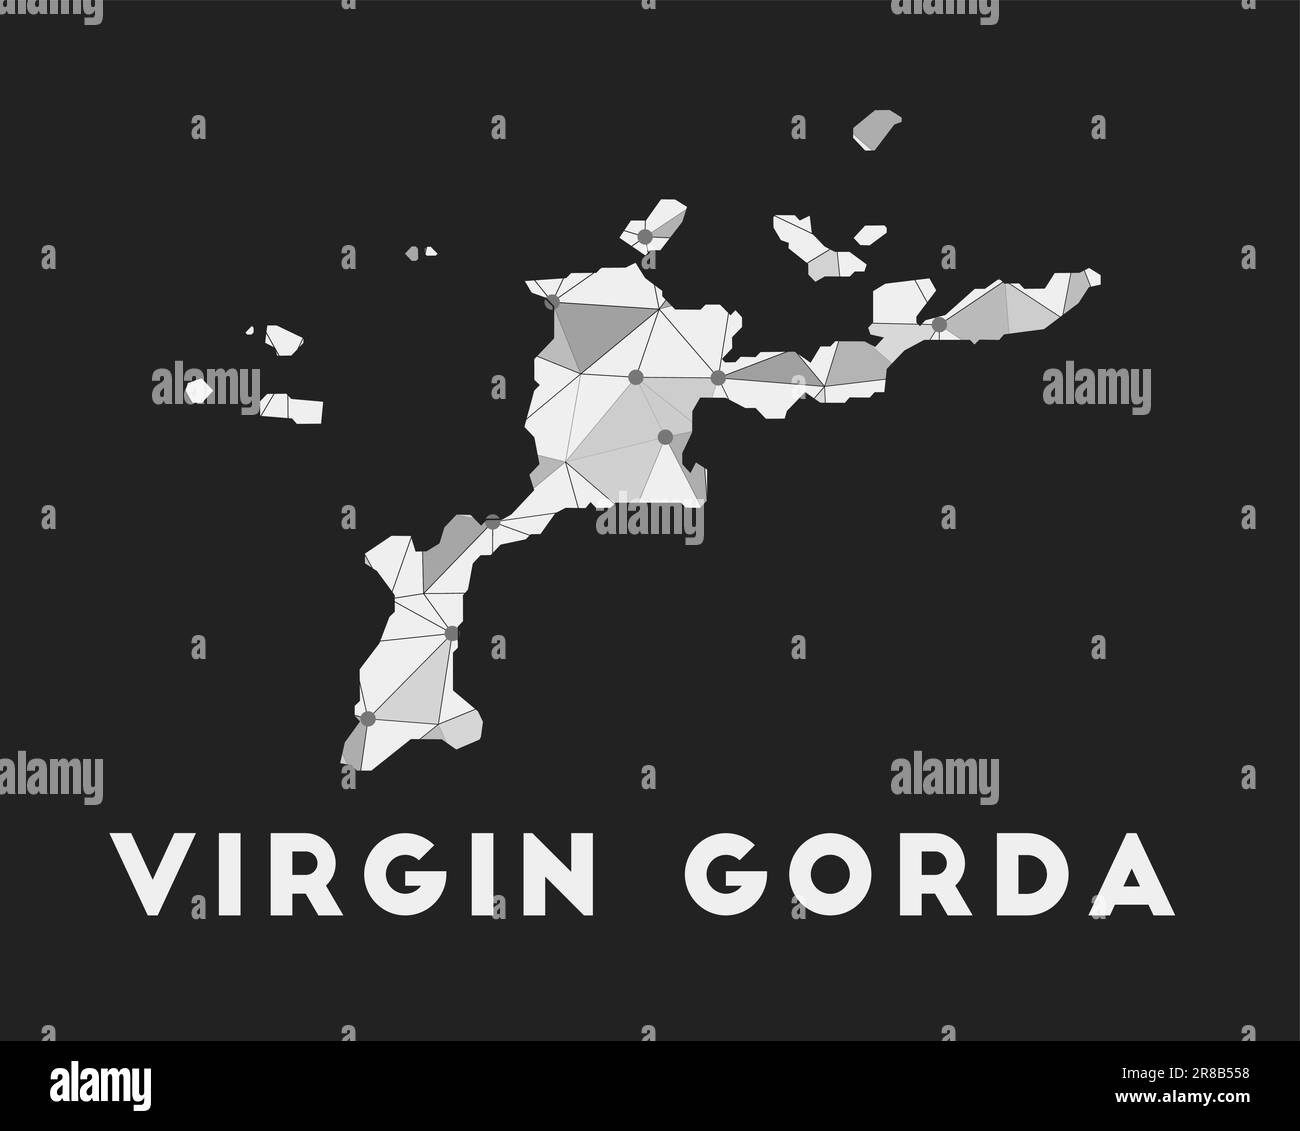 Virgin Gorda - carte du réseau de communication de l'île. Motif géométrique tendance Virgin Gorda sur fond sombre. Technologie, Internet, réseau, télétravail Illustration de Vecteur